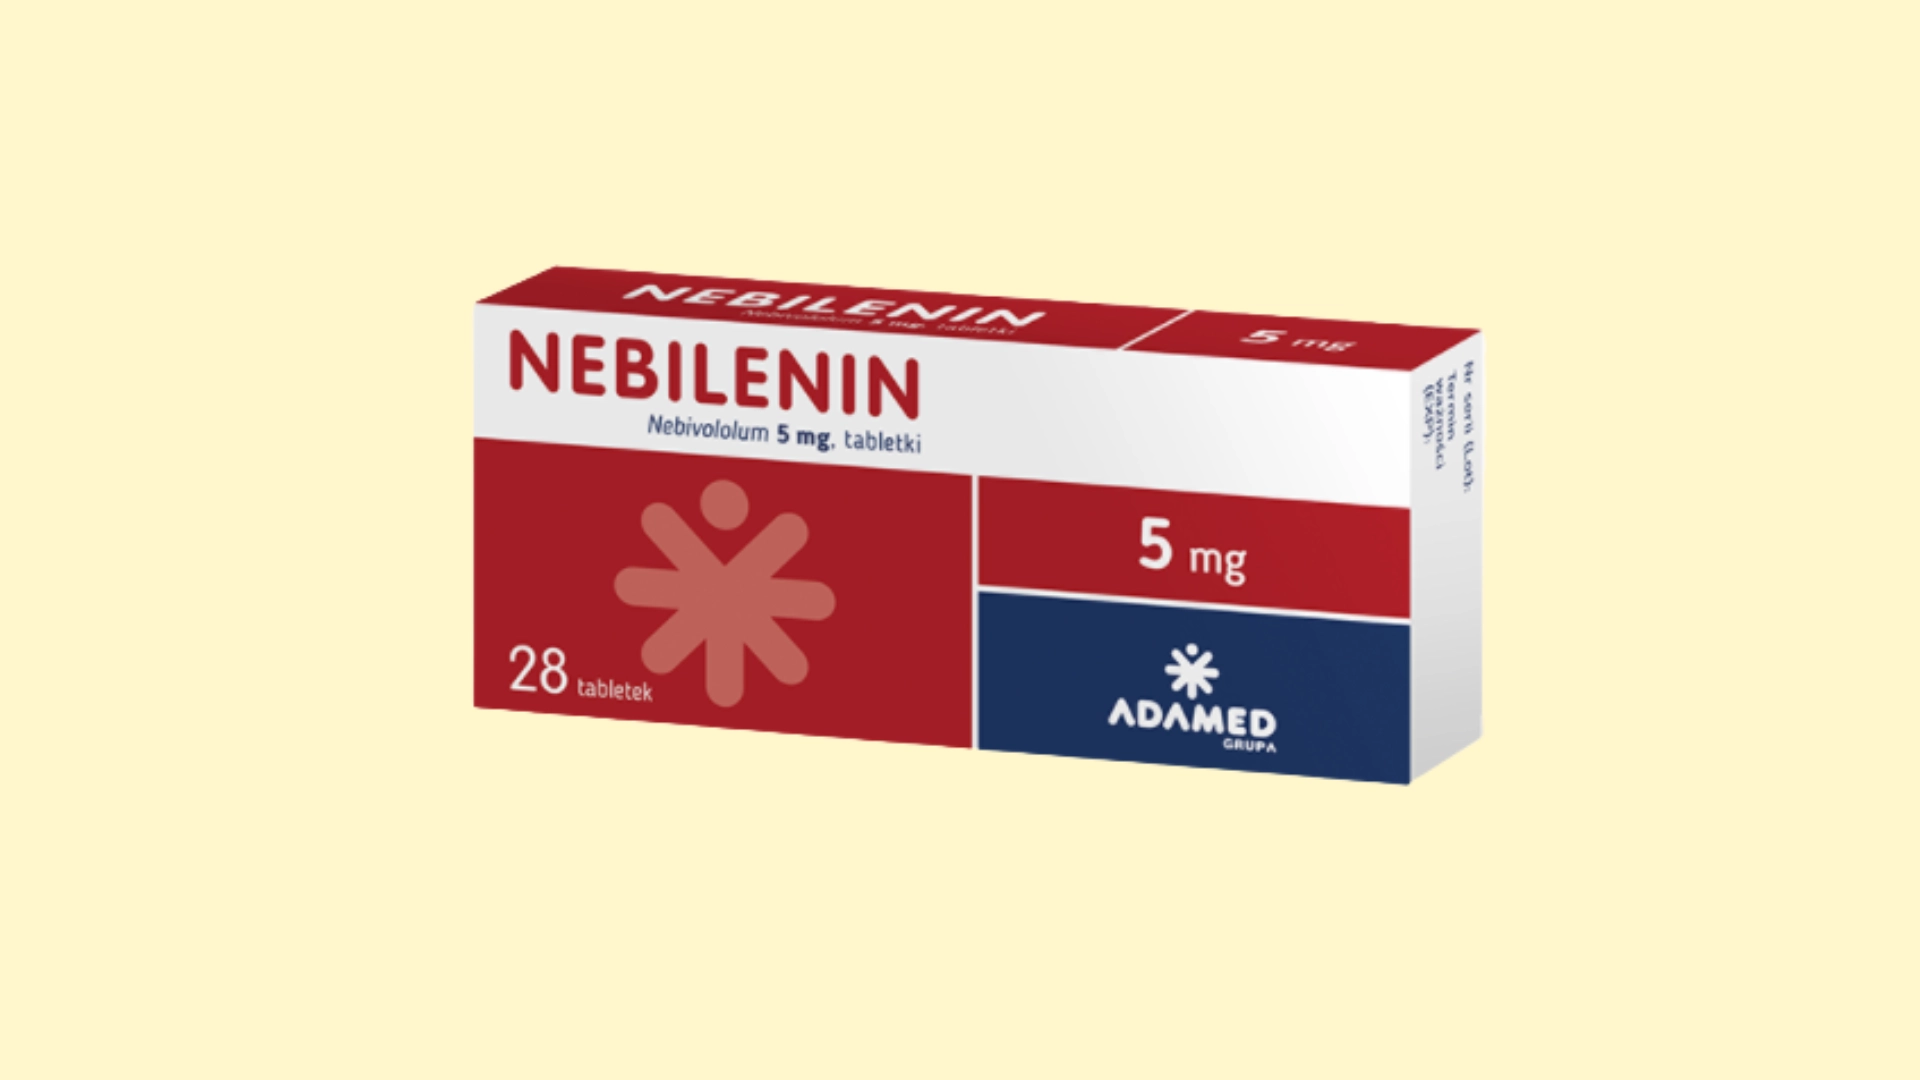 Nebilenin E recepta  recepta online z konsultacją | cena  dawkowanie  przeciwwskazania